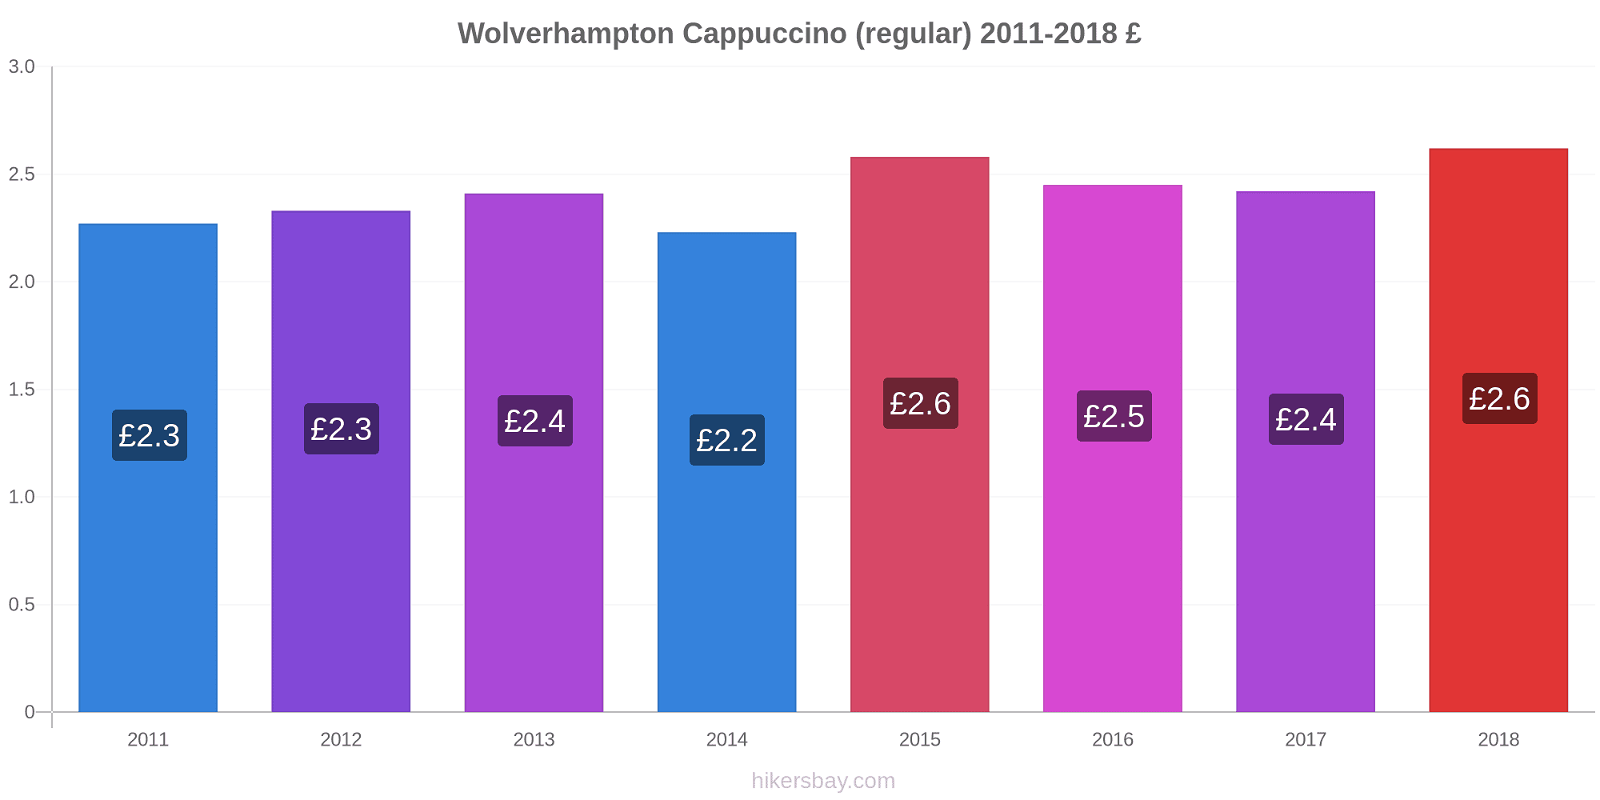 Wolverhampton price changes Cappuccino (regular) hikersbay.com